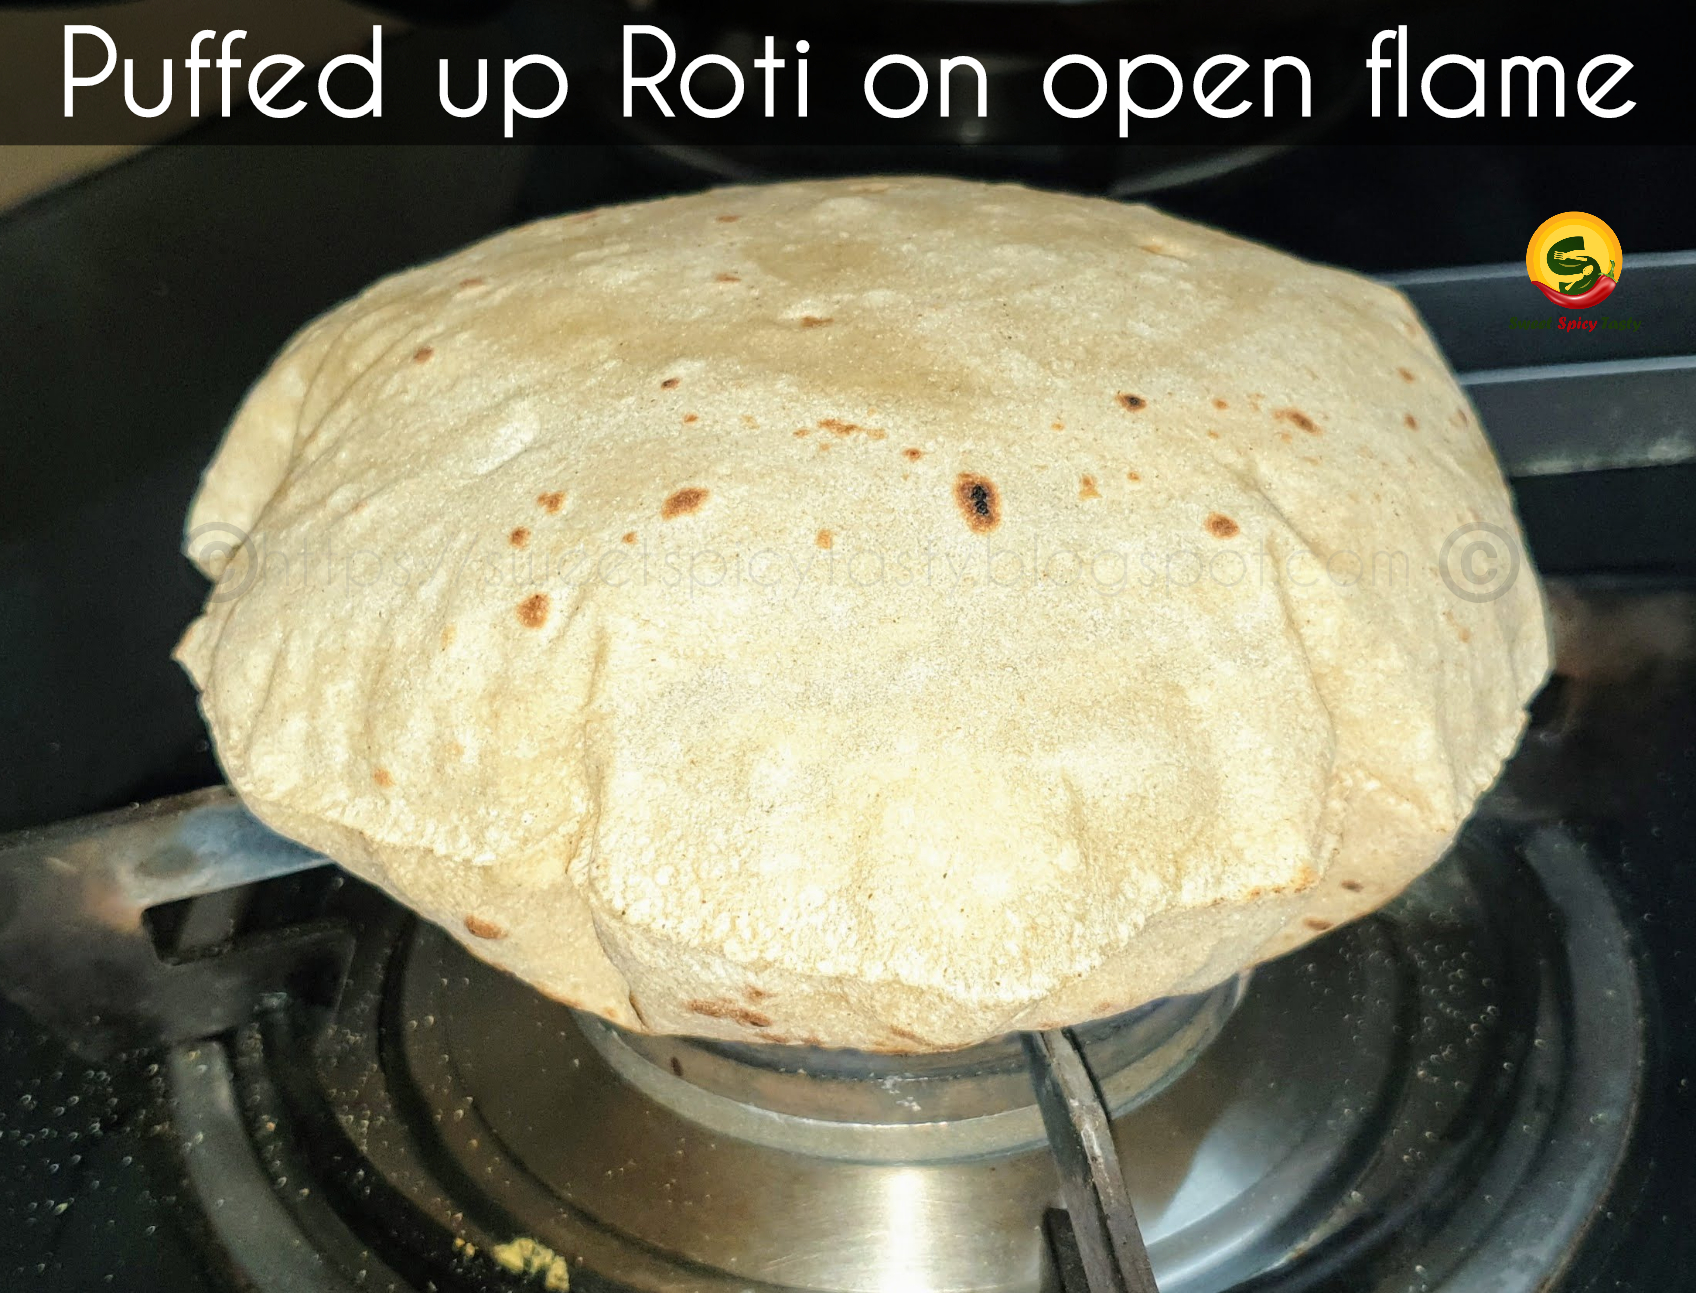 Tawa Roti  Classic India